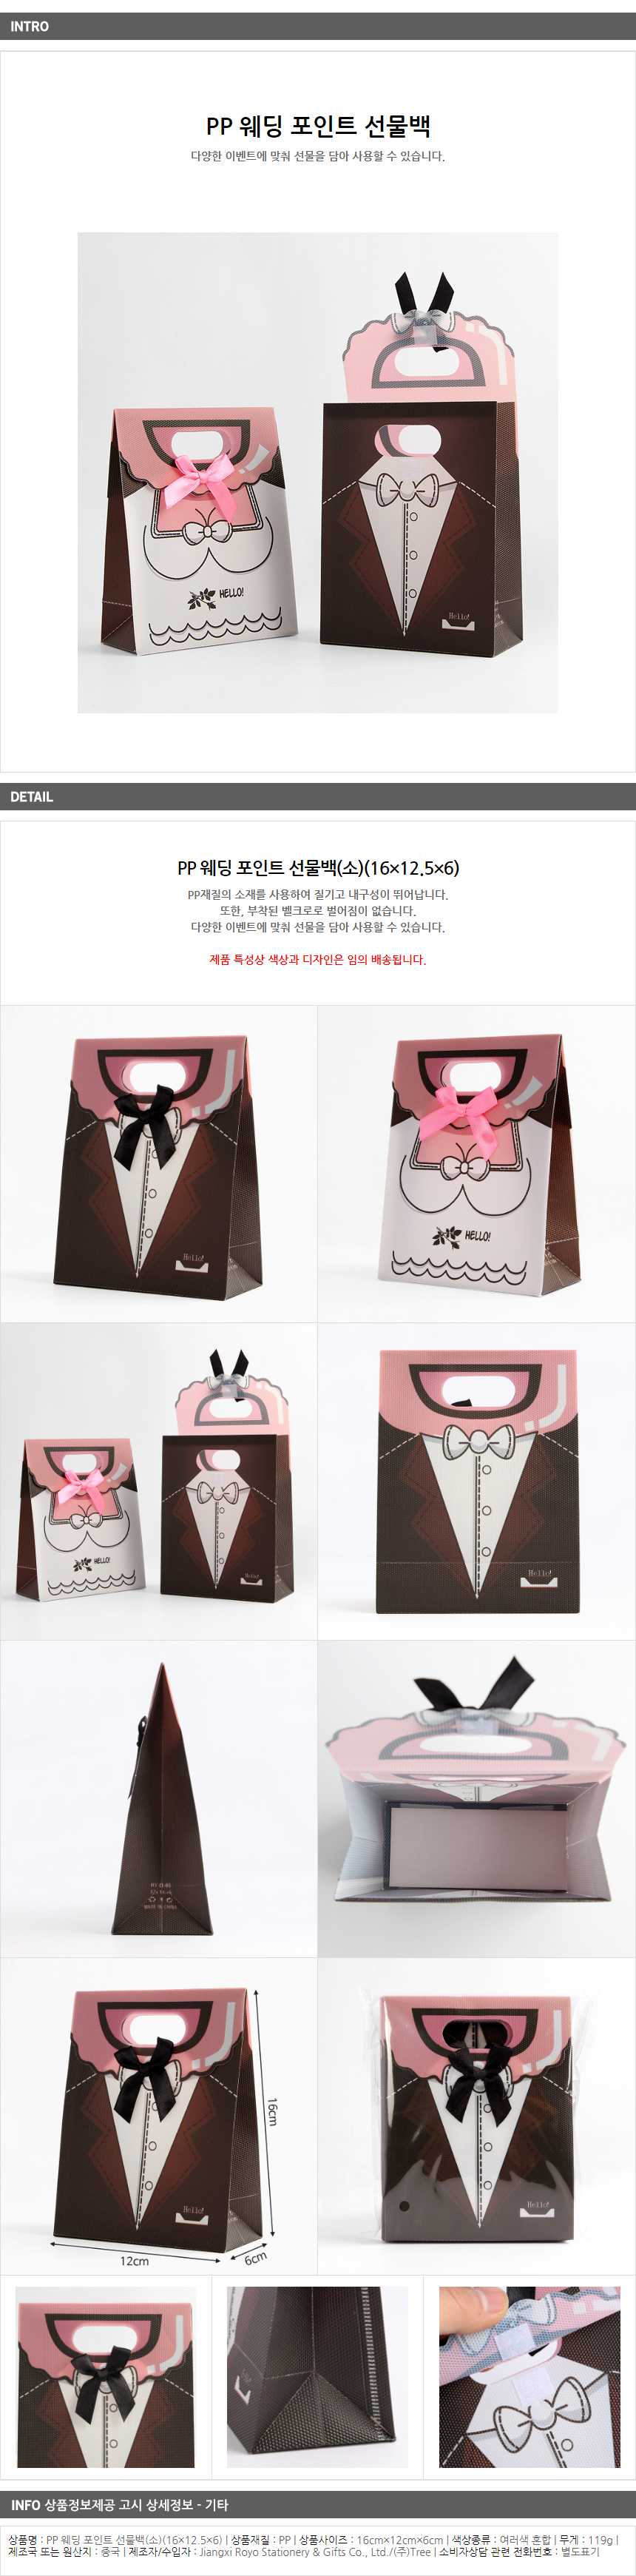 소형 웨딩 포인트 선물백 / 결혼 선물용 쇼핑백